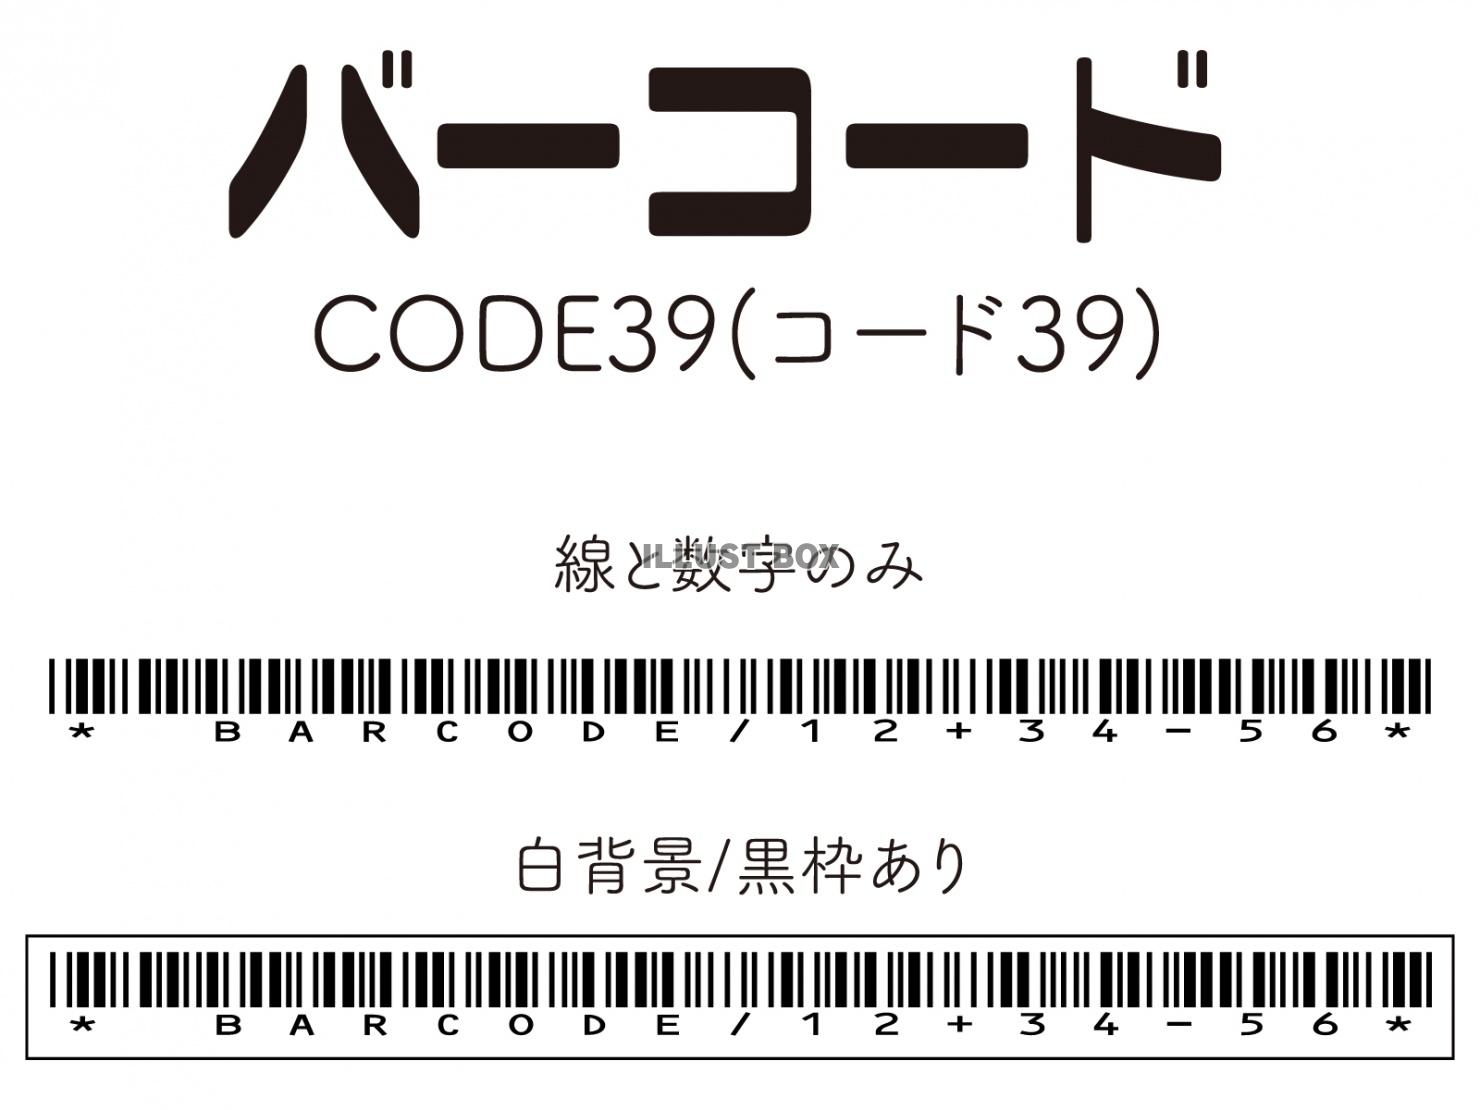 バーコード(CODE39)セット